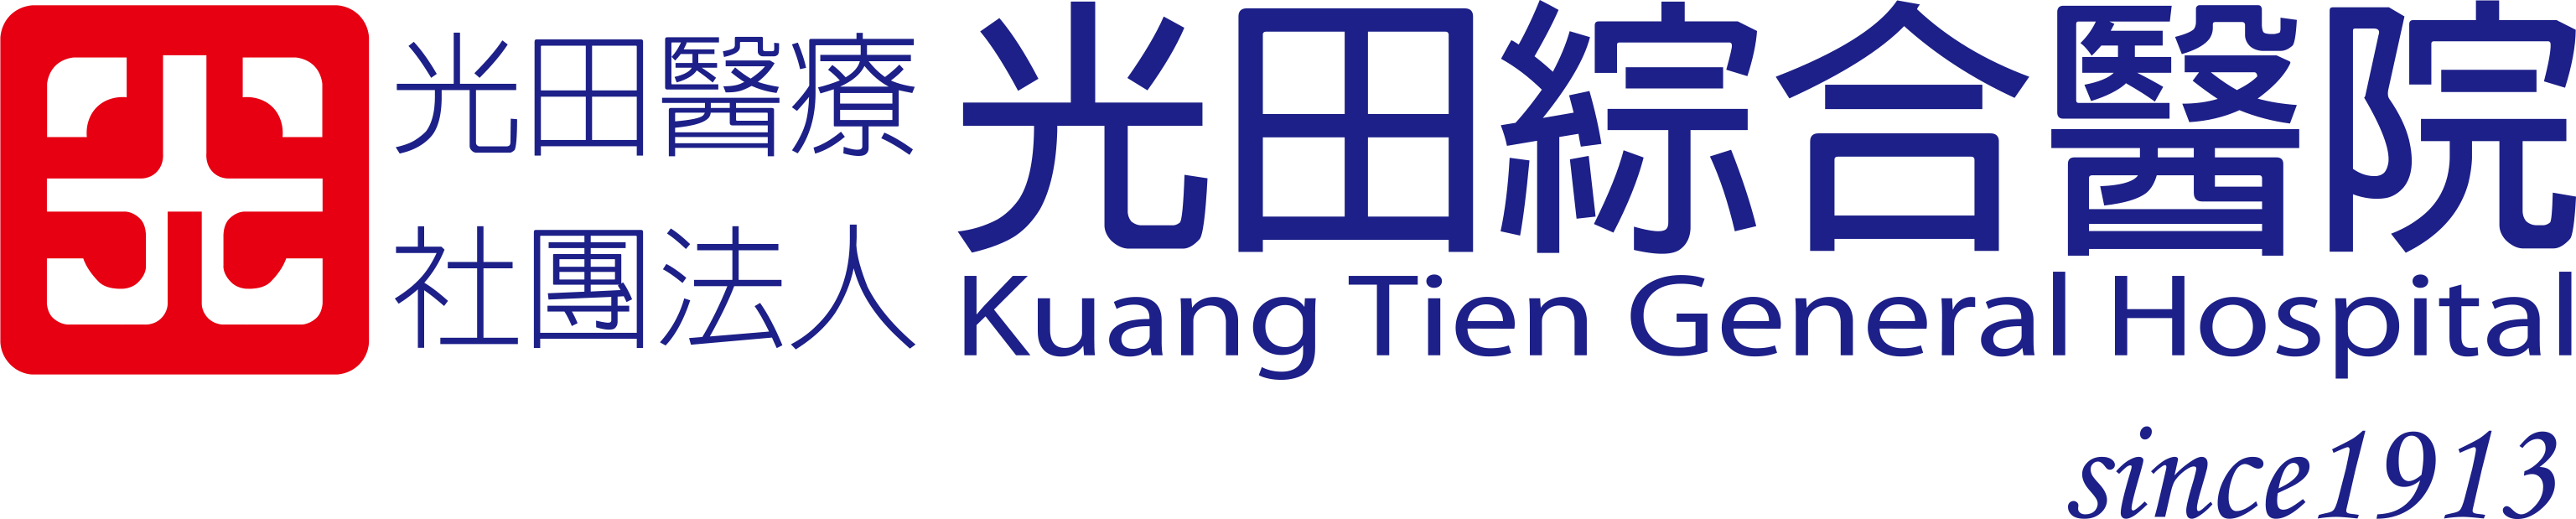 光田logo.png